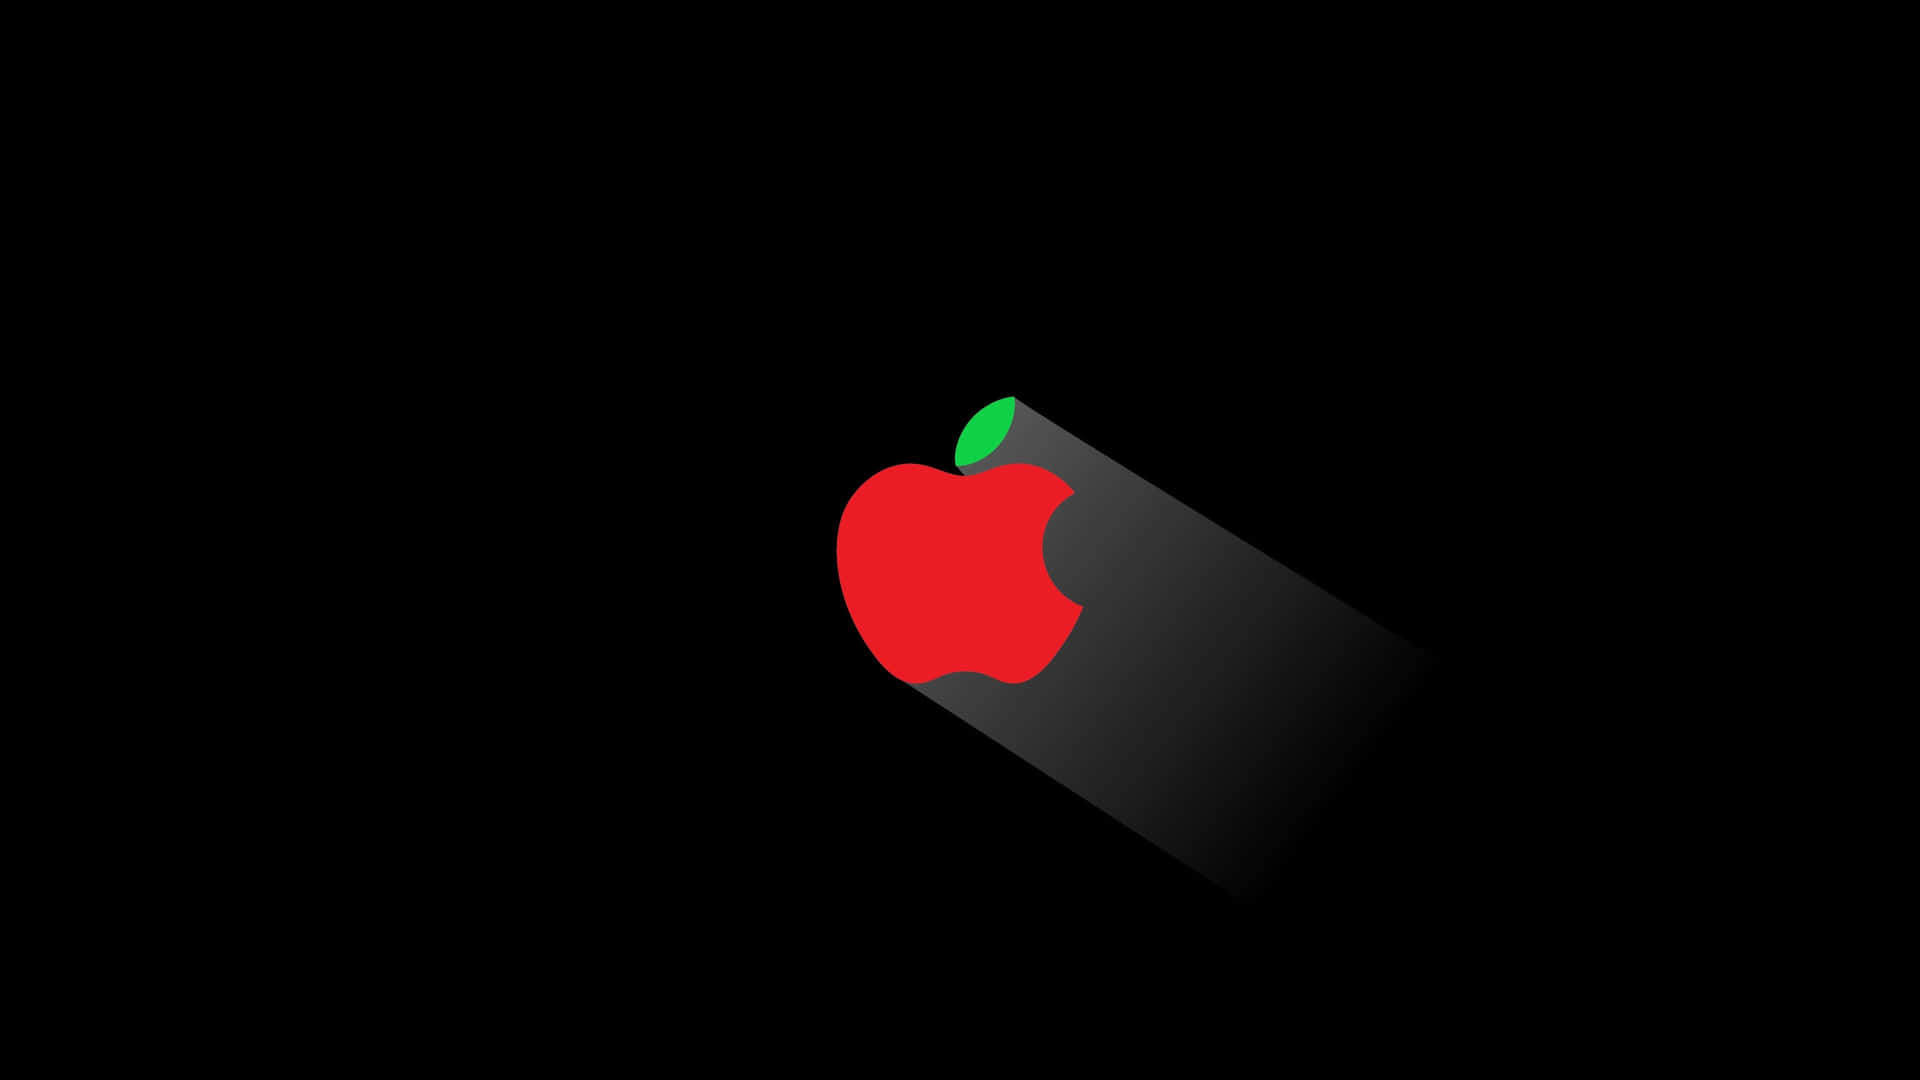 Unlogo Apple A Risoluzione 4k Su Uno Sfondo Nero. Sfondo